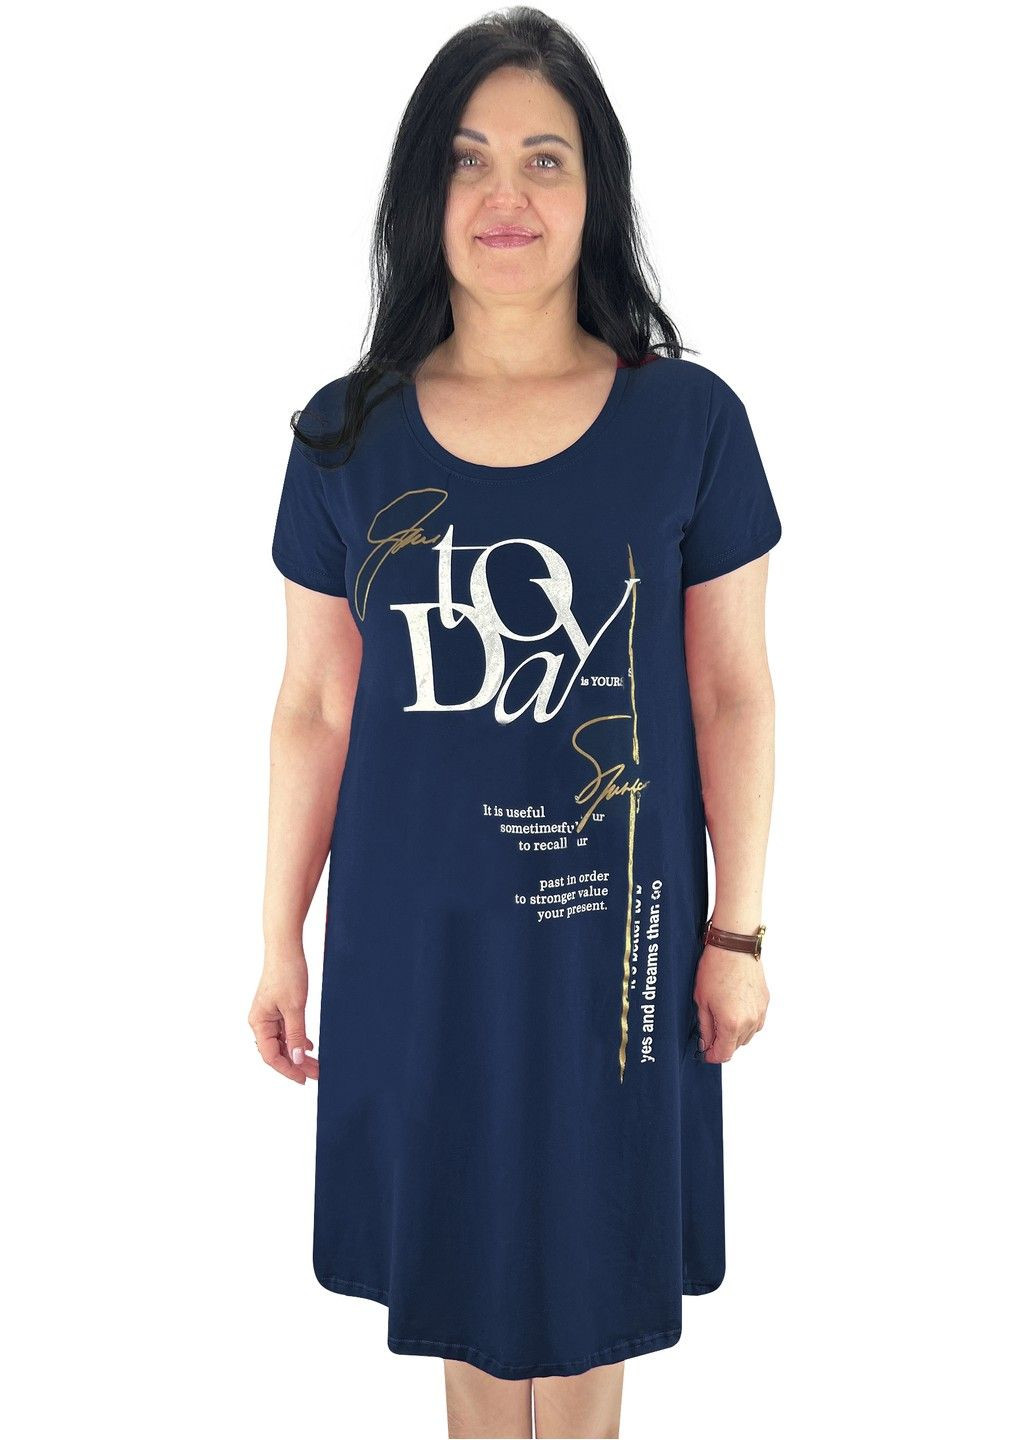 Черное повседневный, домашнее платье женское с накатом фуликра Жемчужина стилей с надписью